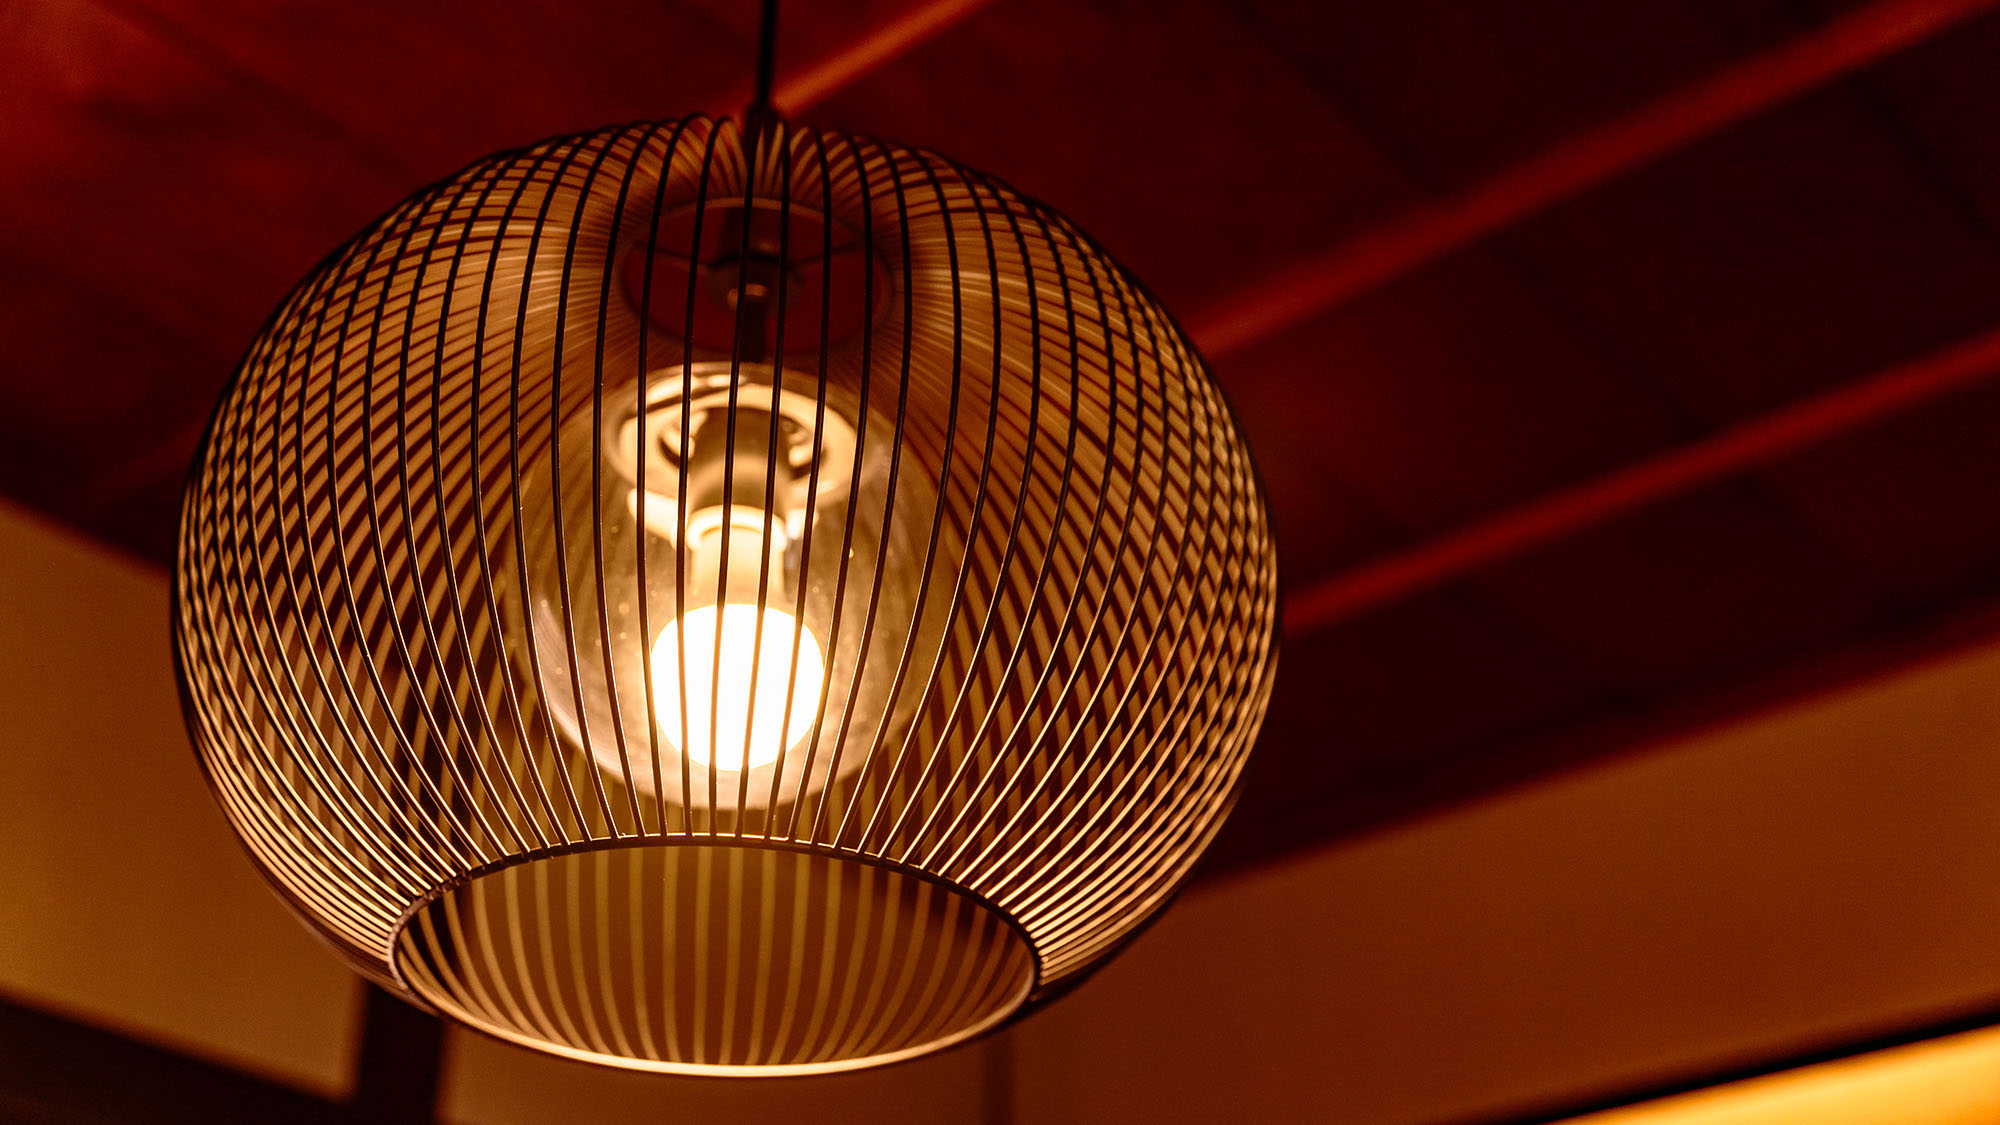 ・【インテリア】木製のランプシェードがお部屋のアクセントに